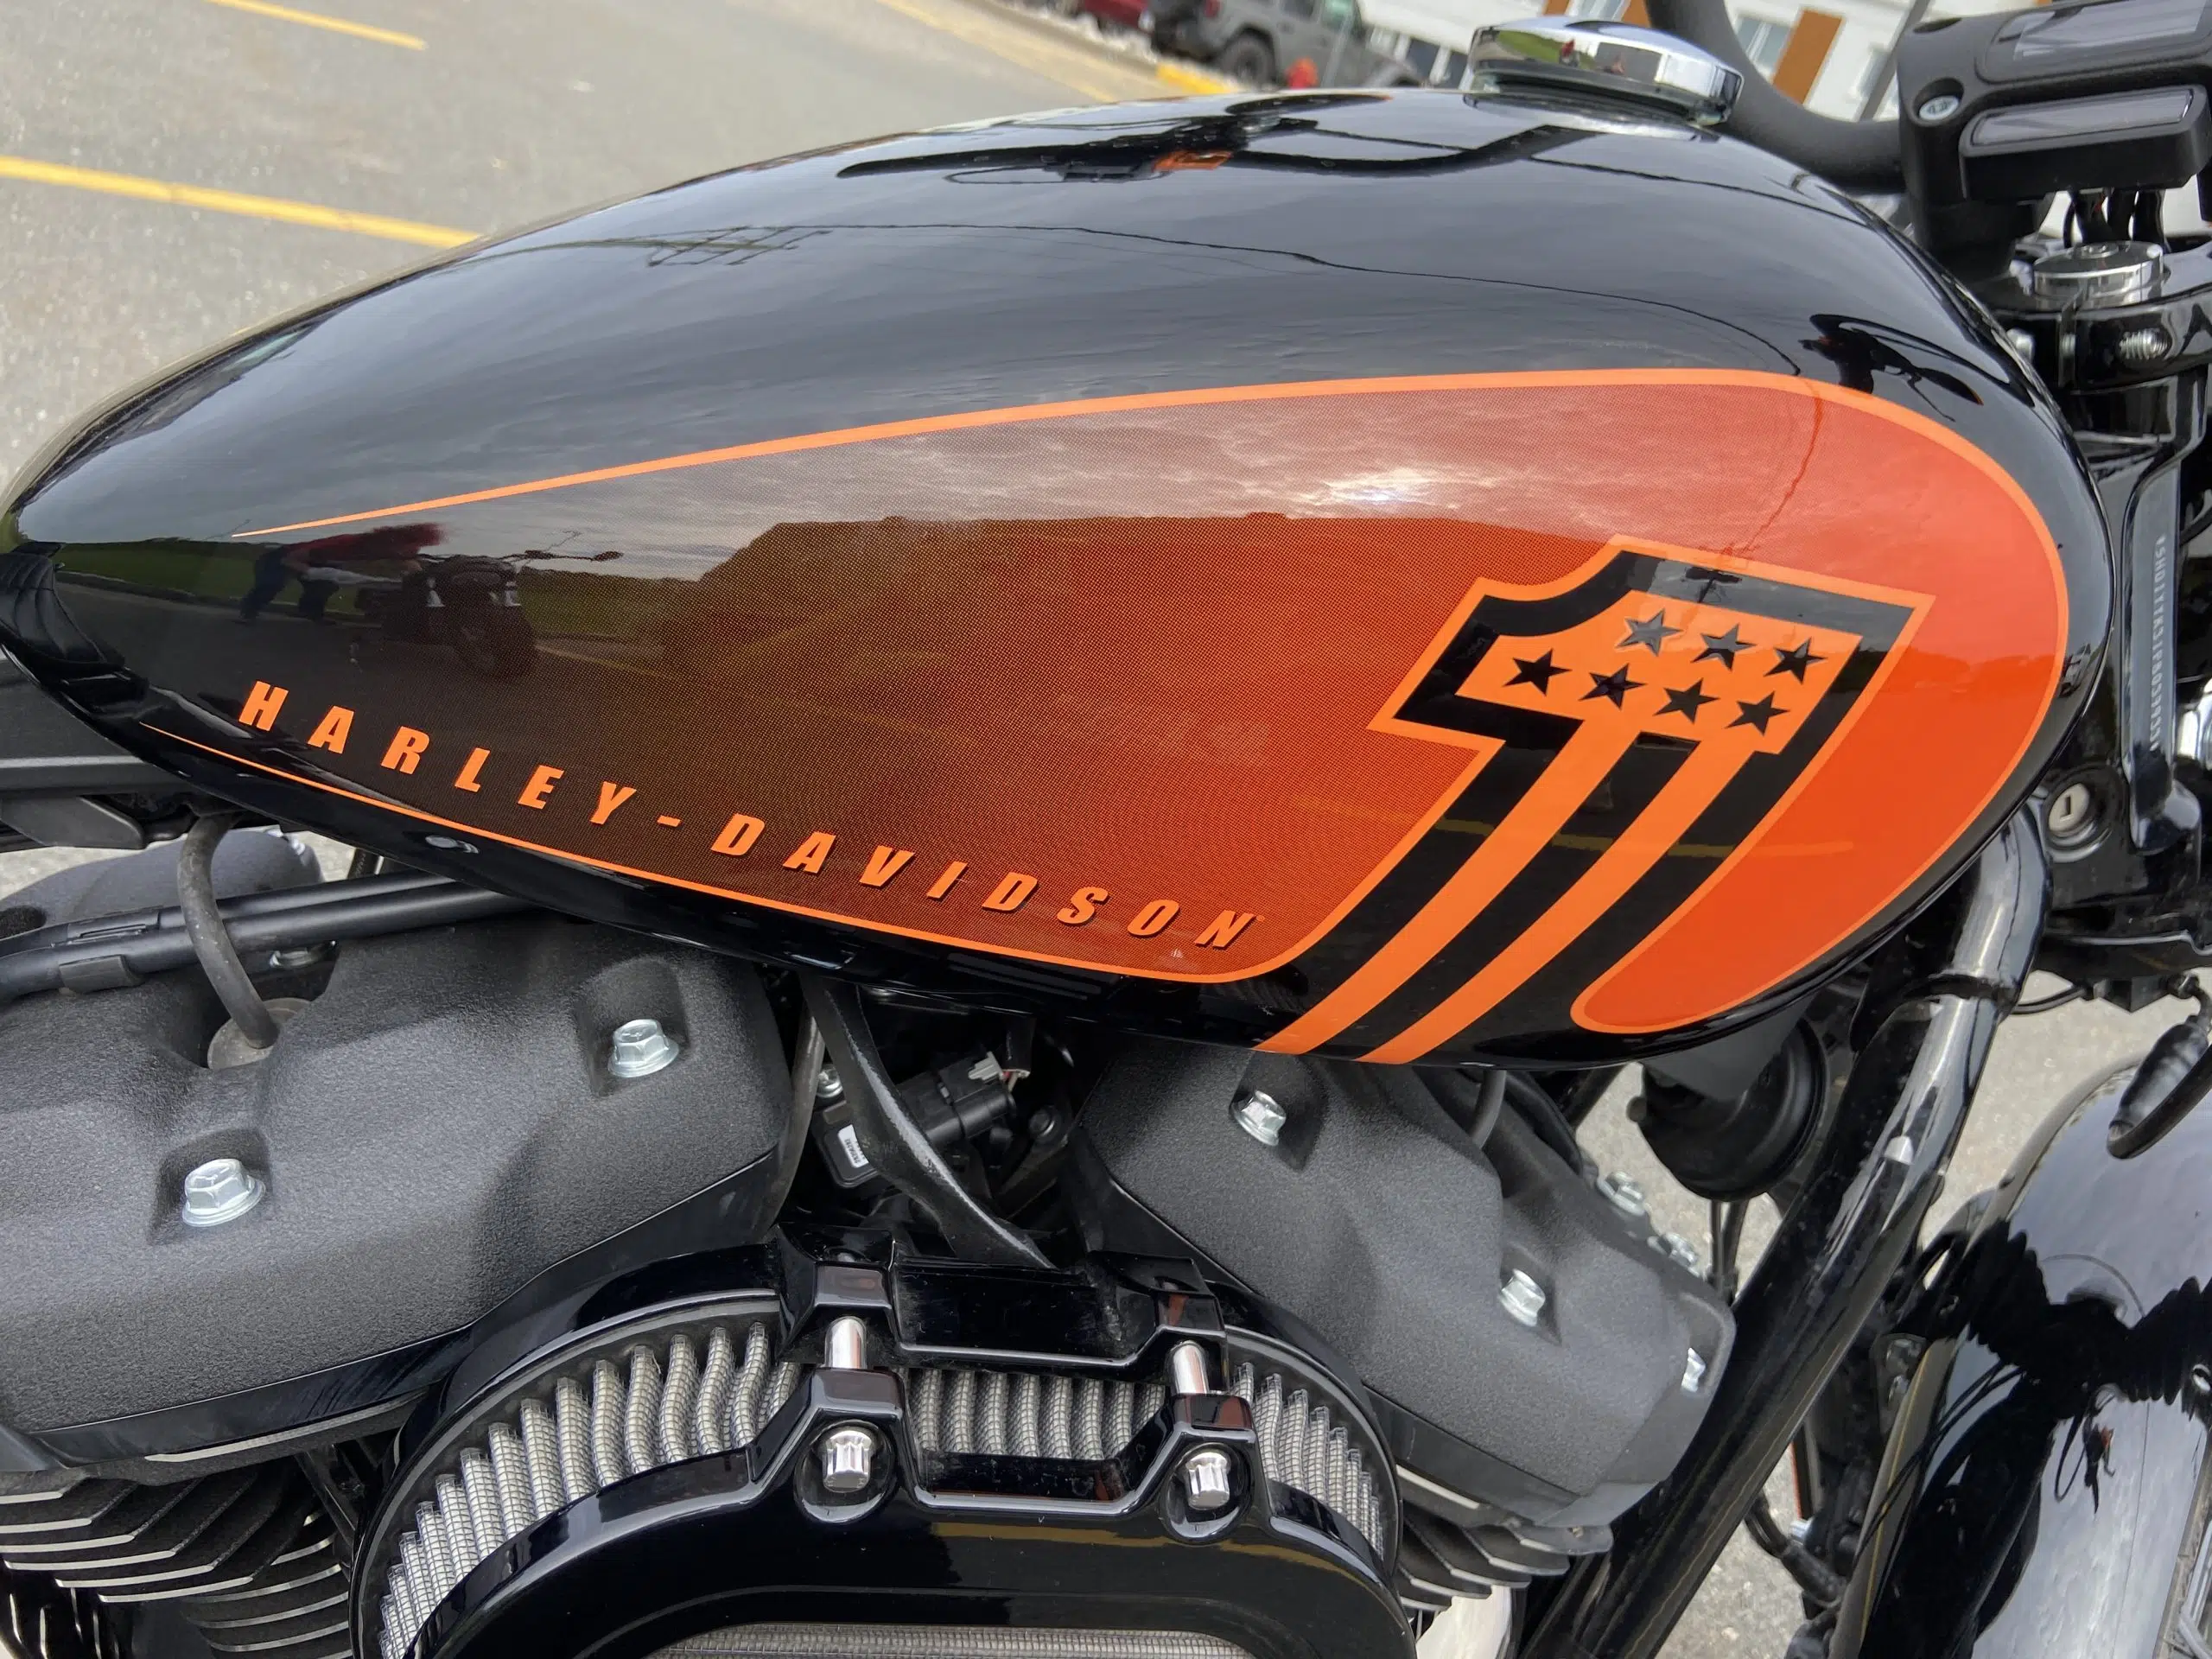 Les motifs oranges sur la moto vivd black font un rappel de la couleur emblématique Harley